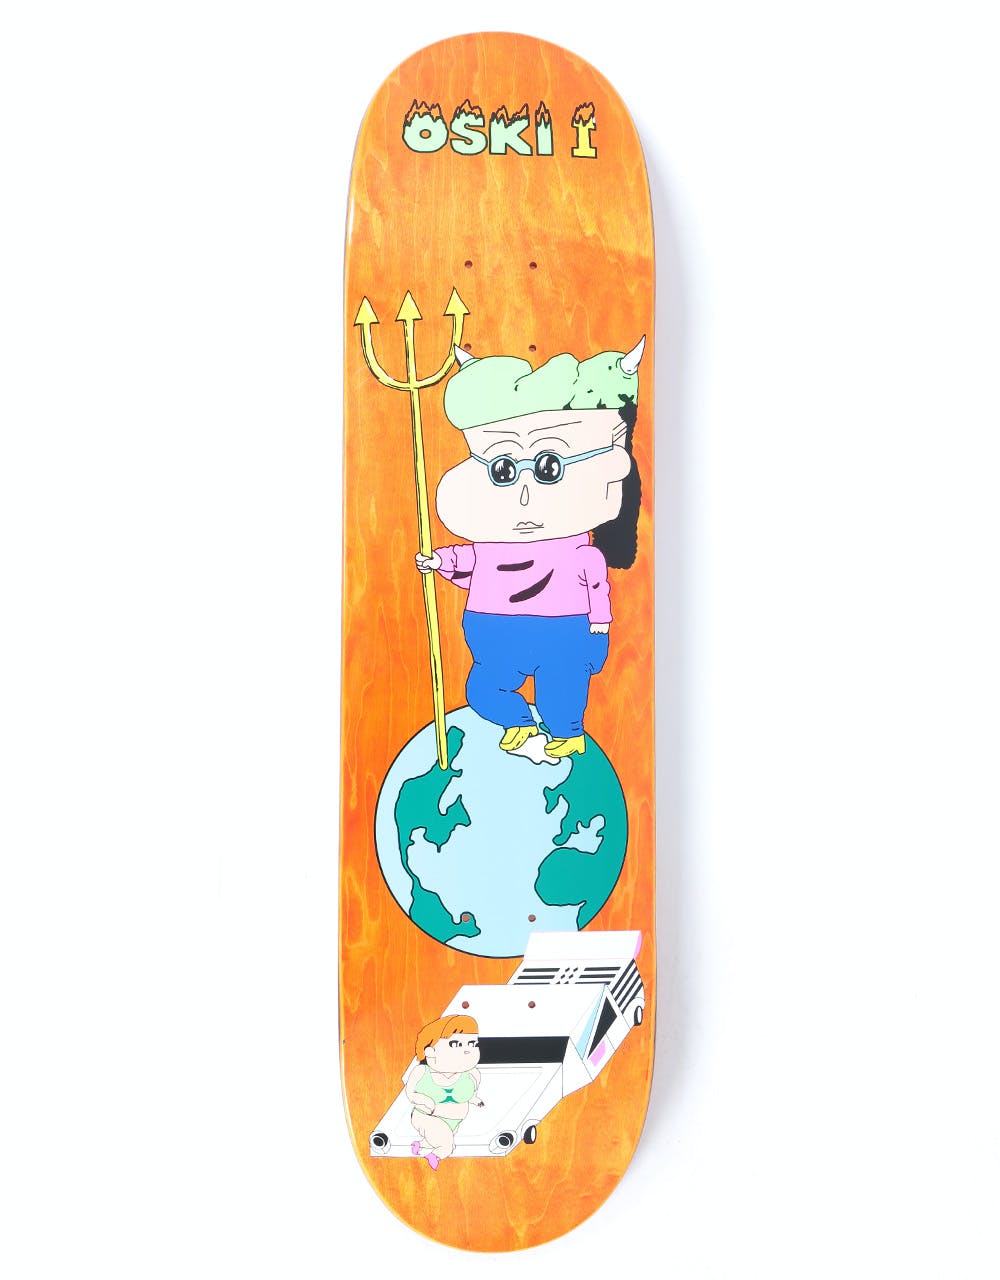 Polar Oski 1 Skateboard Deck - 7.875"